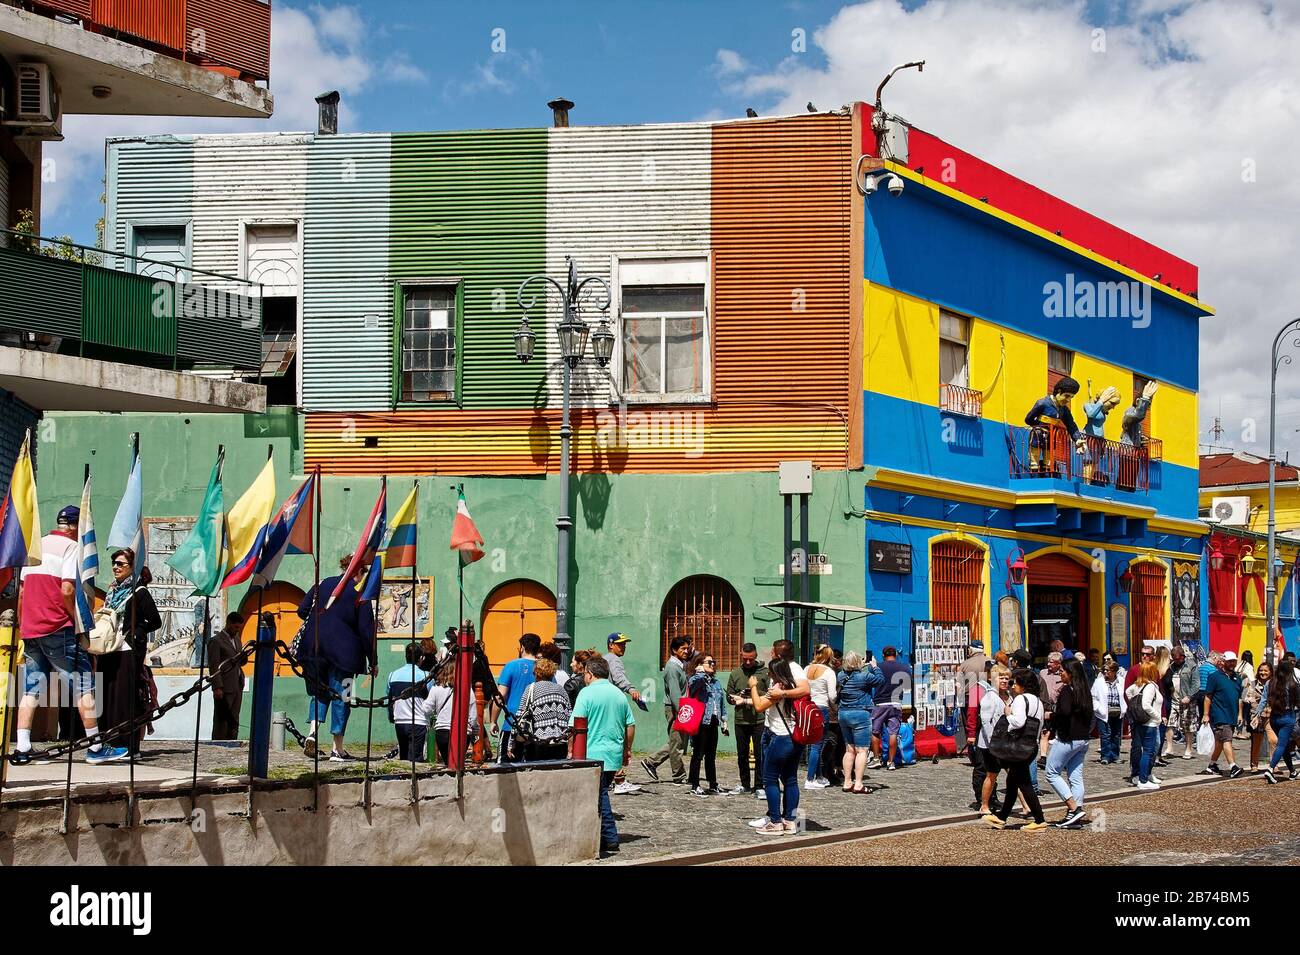 Vieux bâtiment coloré; balcon, 3 chiffres, affaires, gens, foule, quartier de la Boca; Amérique du Sud; Buenos Aires; Argentine; été Banque D'Images